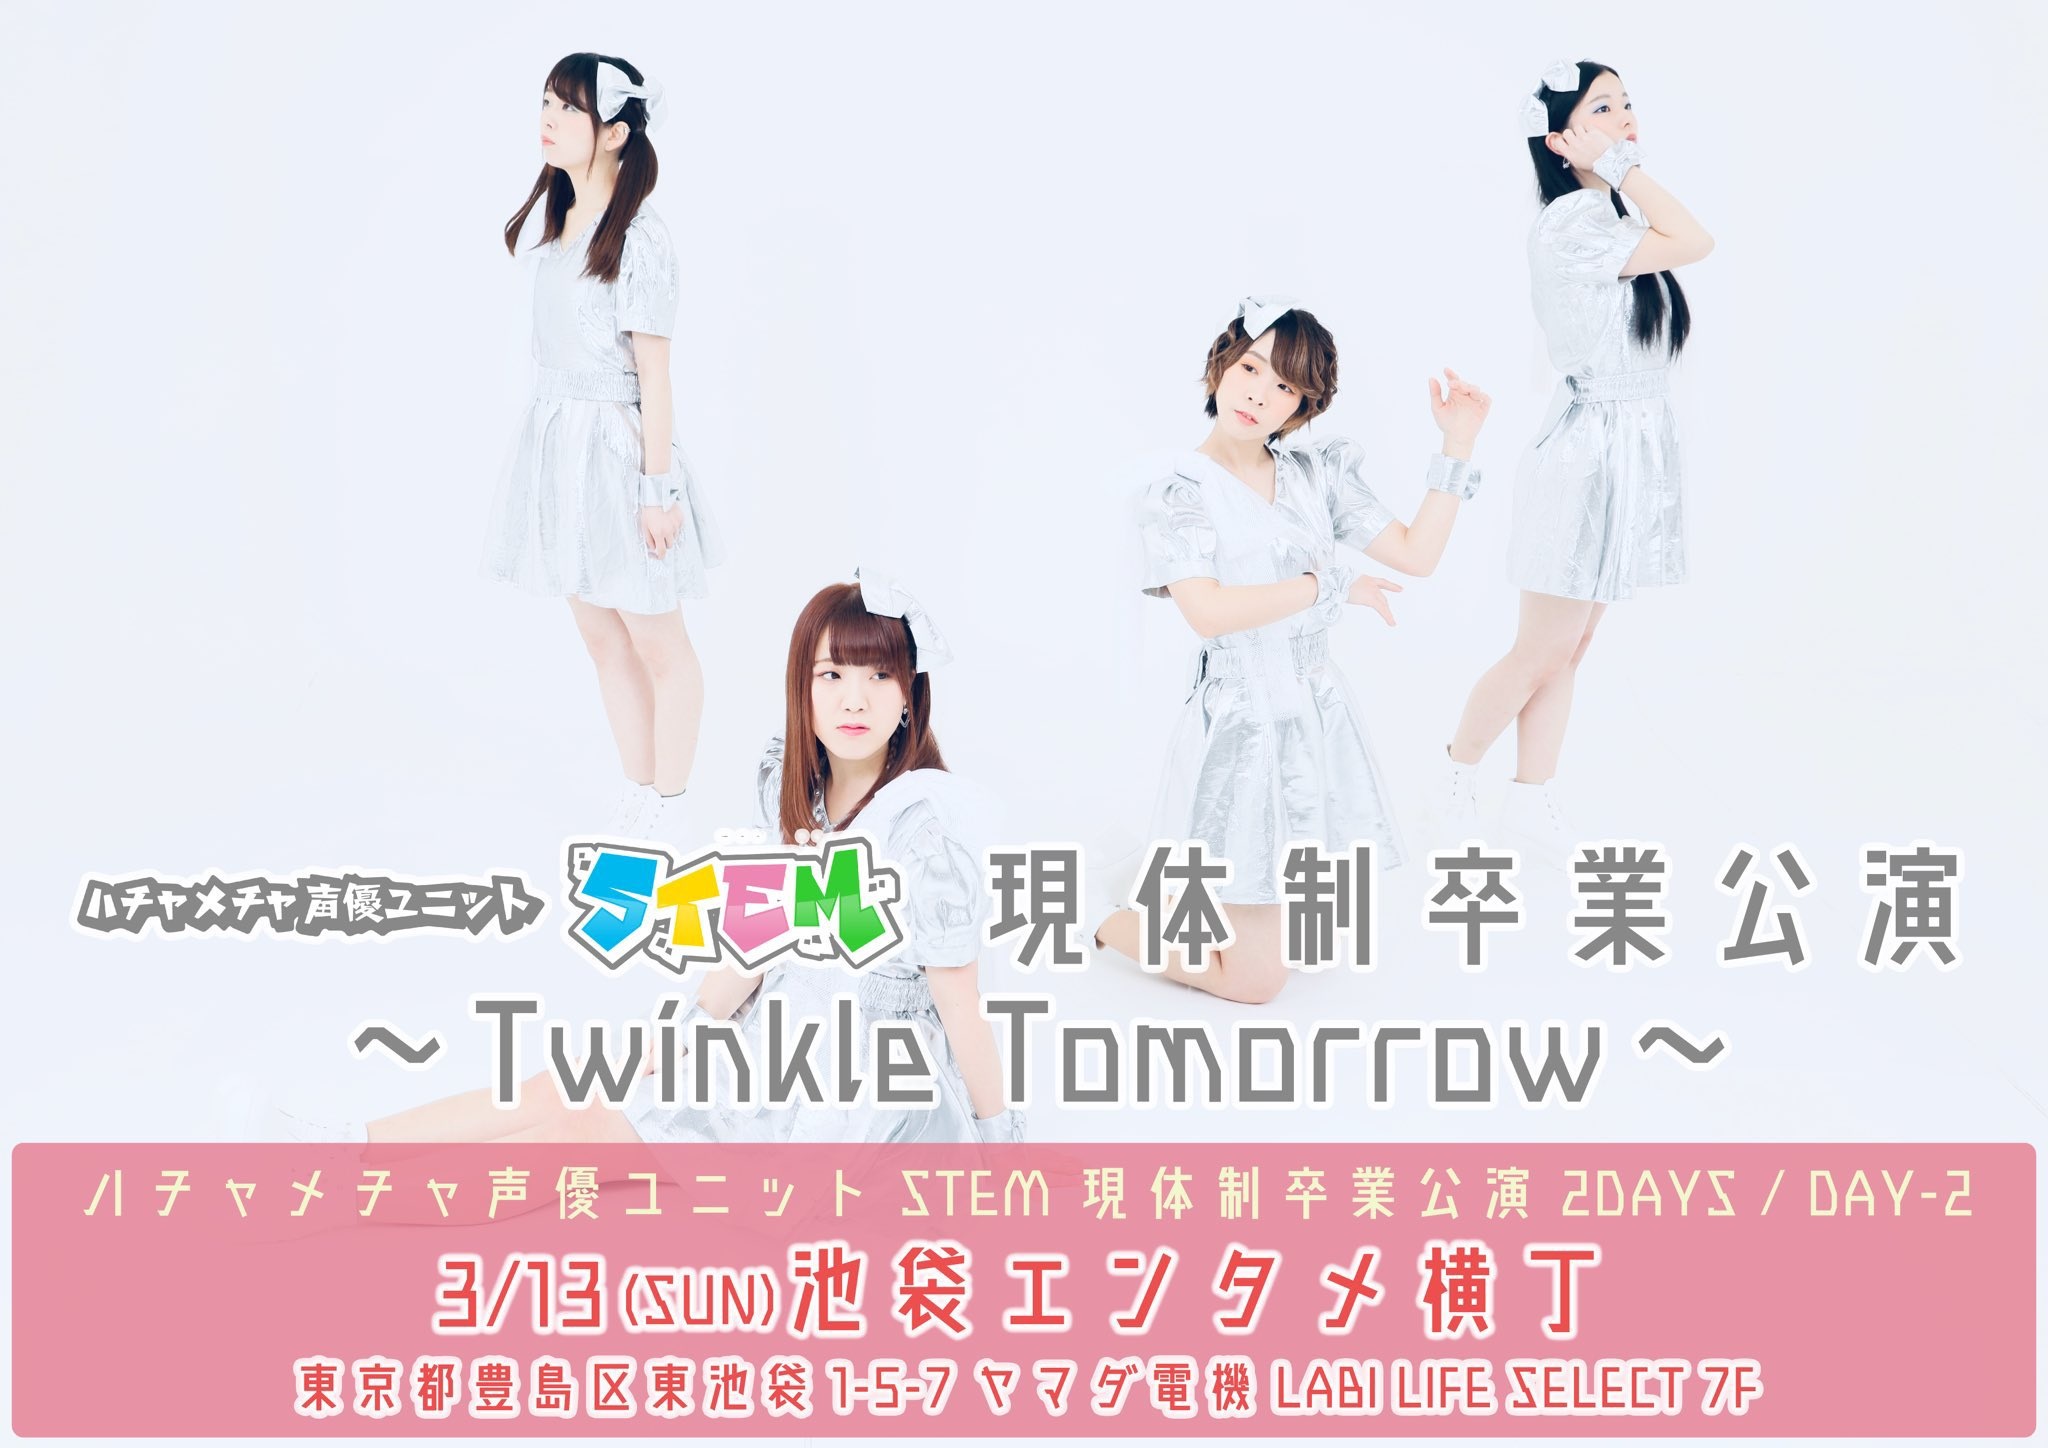 3月13日(日)ハチャメチャ声優ユニット STEM 主催2DAYS / DAY-2「現体制卒業公演〜Twinkle Tomorrow〜」に出演します!!!